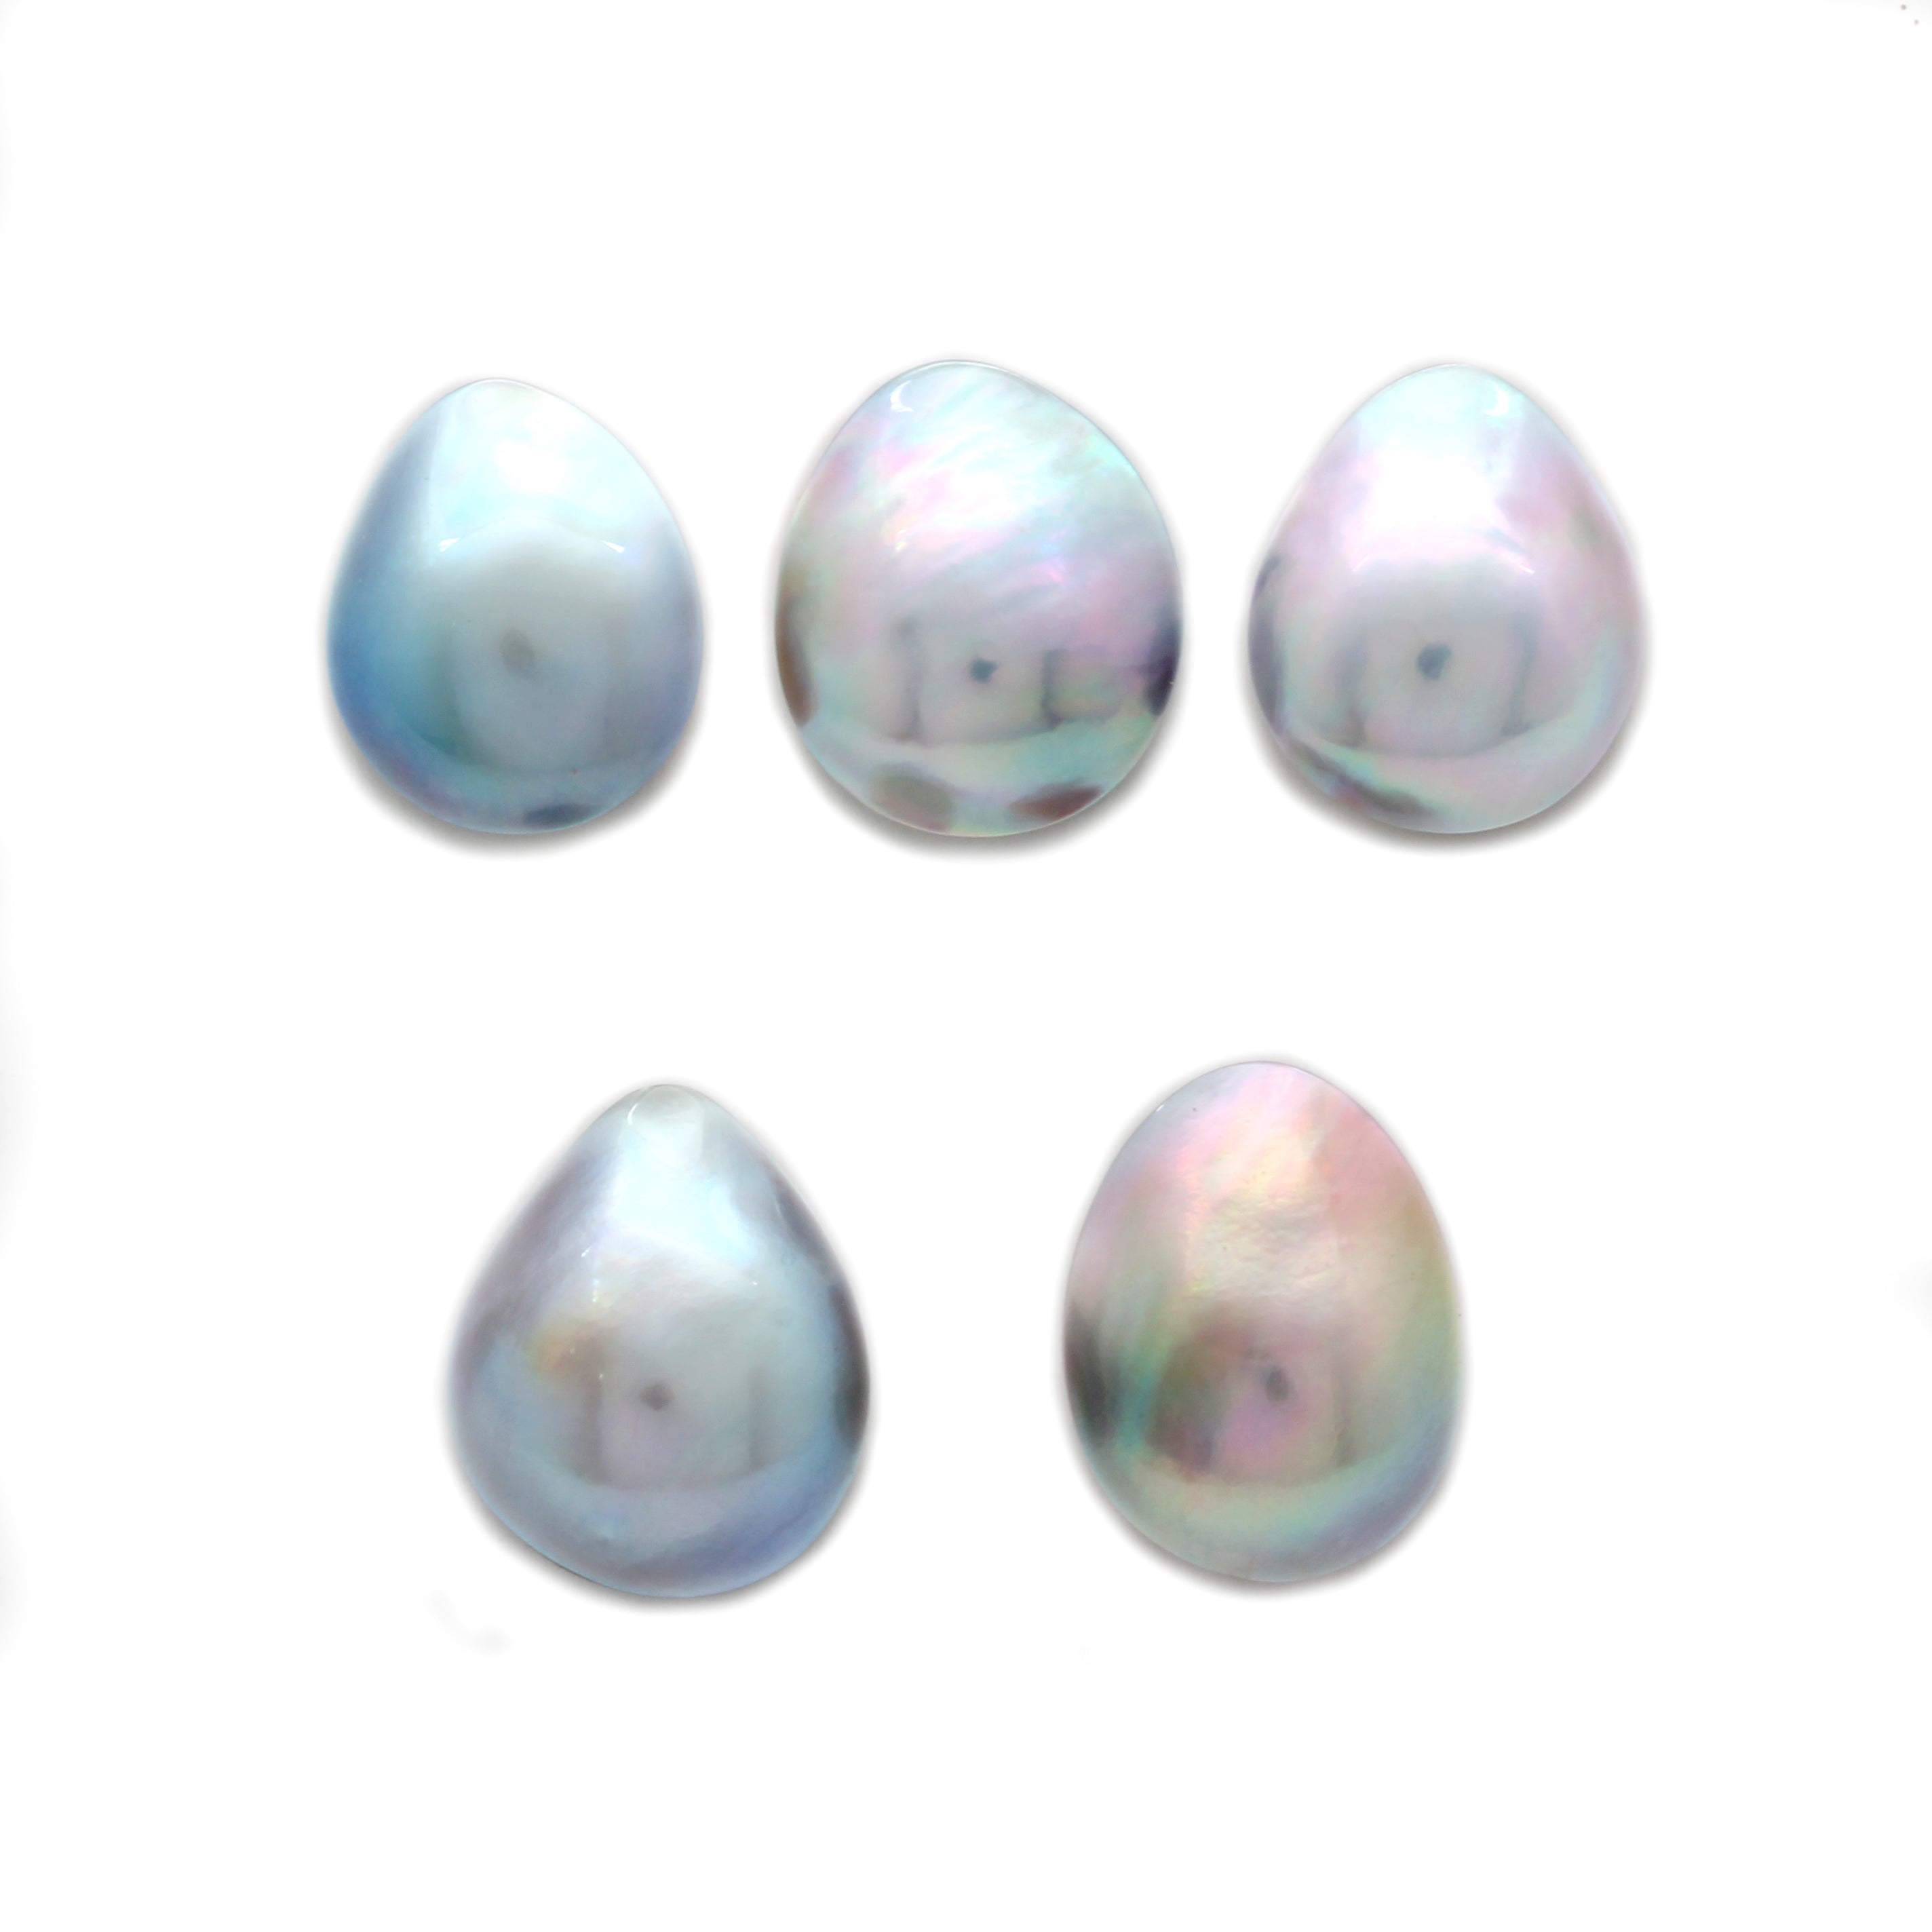 5 Cortez Mabe Pearls "A" Grade